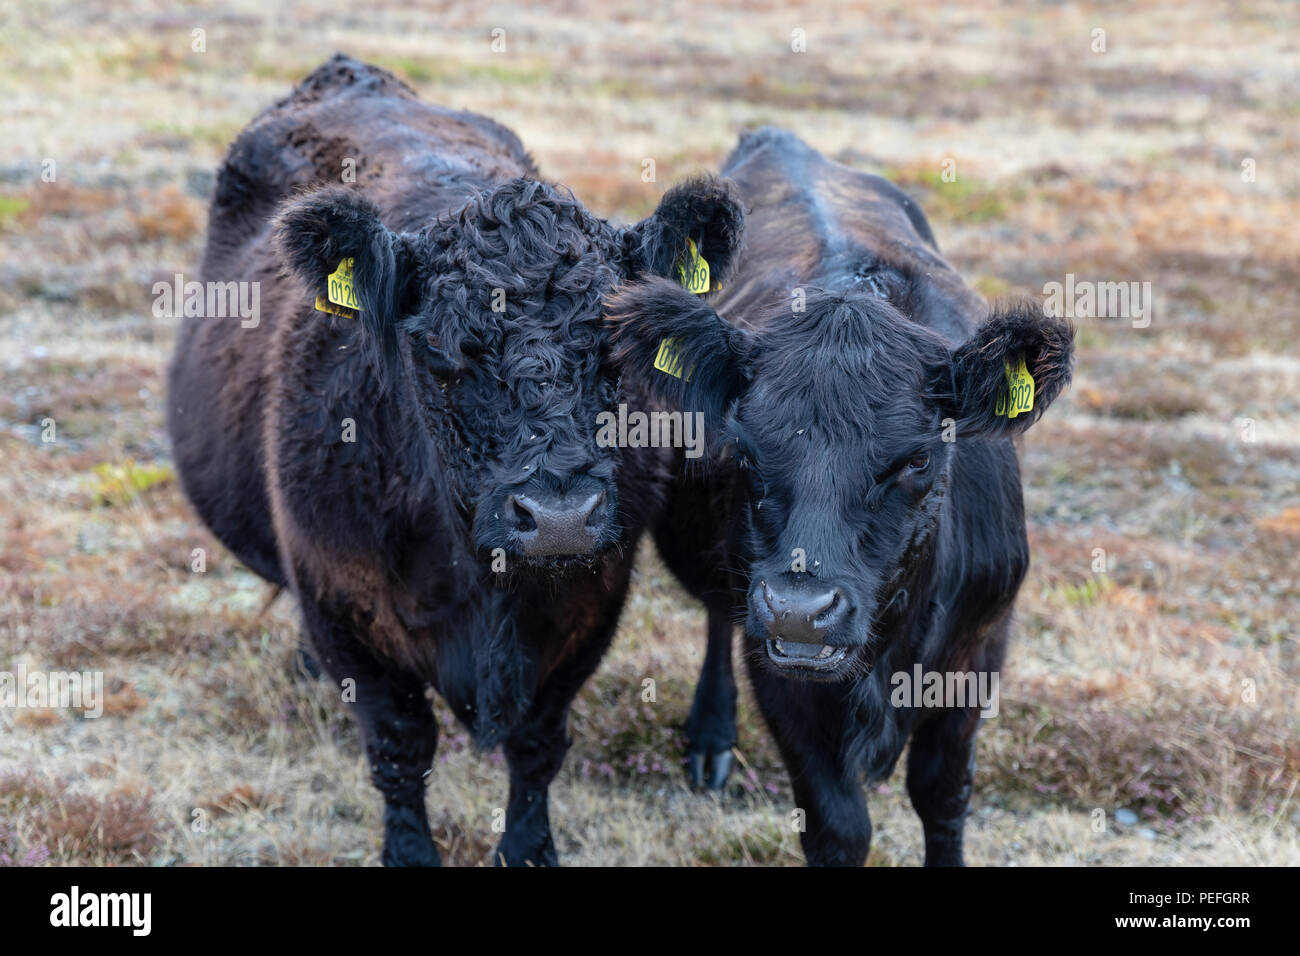 Galloway cattle in a field; Laesoe, Denmark Stock Photo